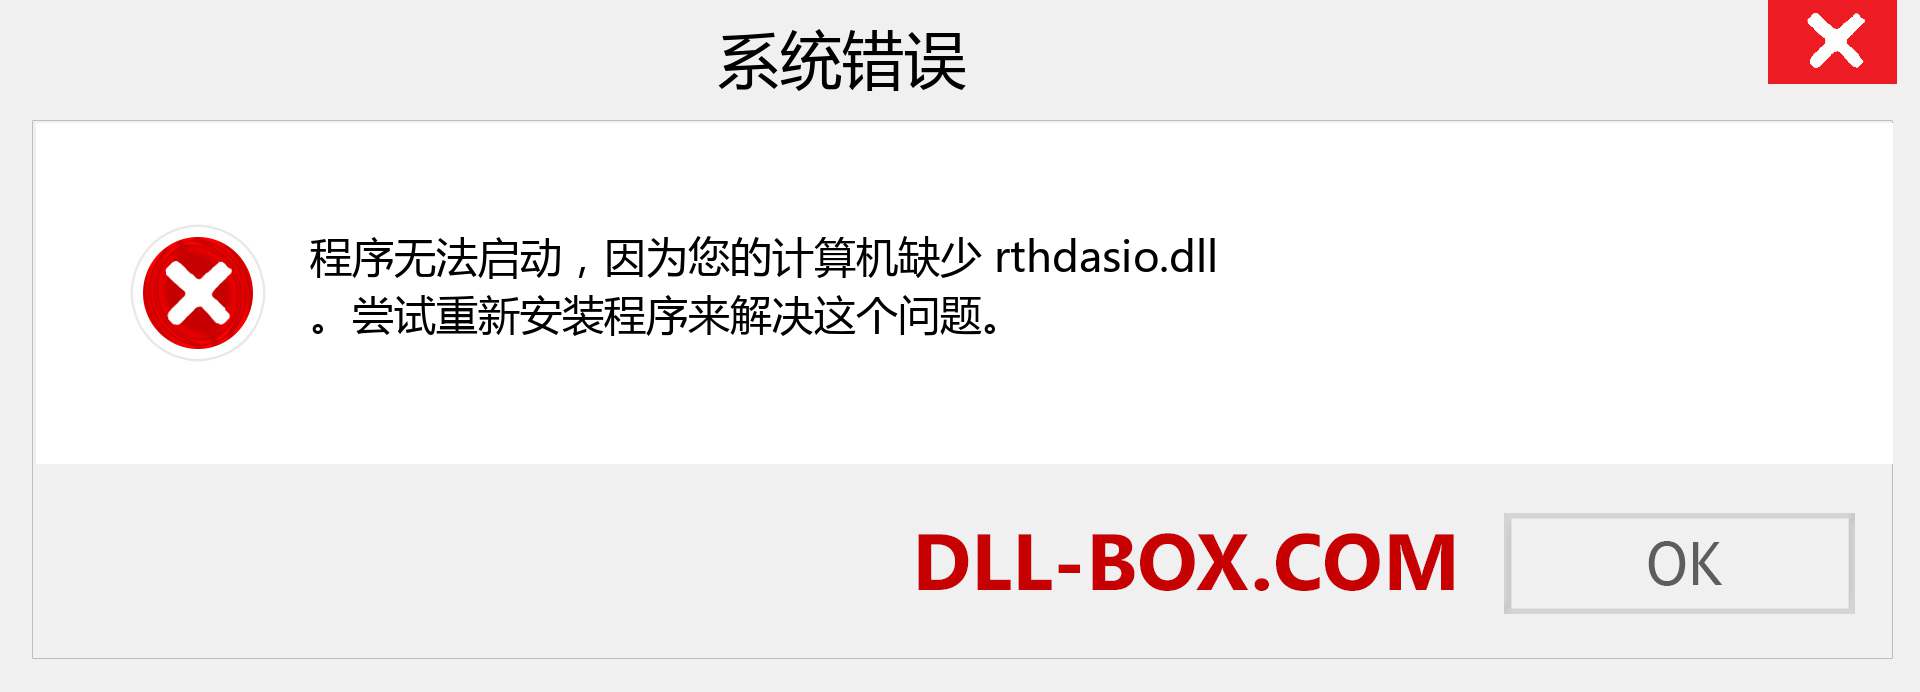 rthdasio.dll 文件丢失？。 适用于 Windows 7、8、10 的下载 - 修复 Windows、照片、图像上的 rthdasio dll 丢失错误